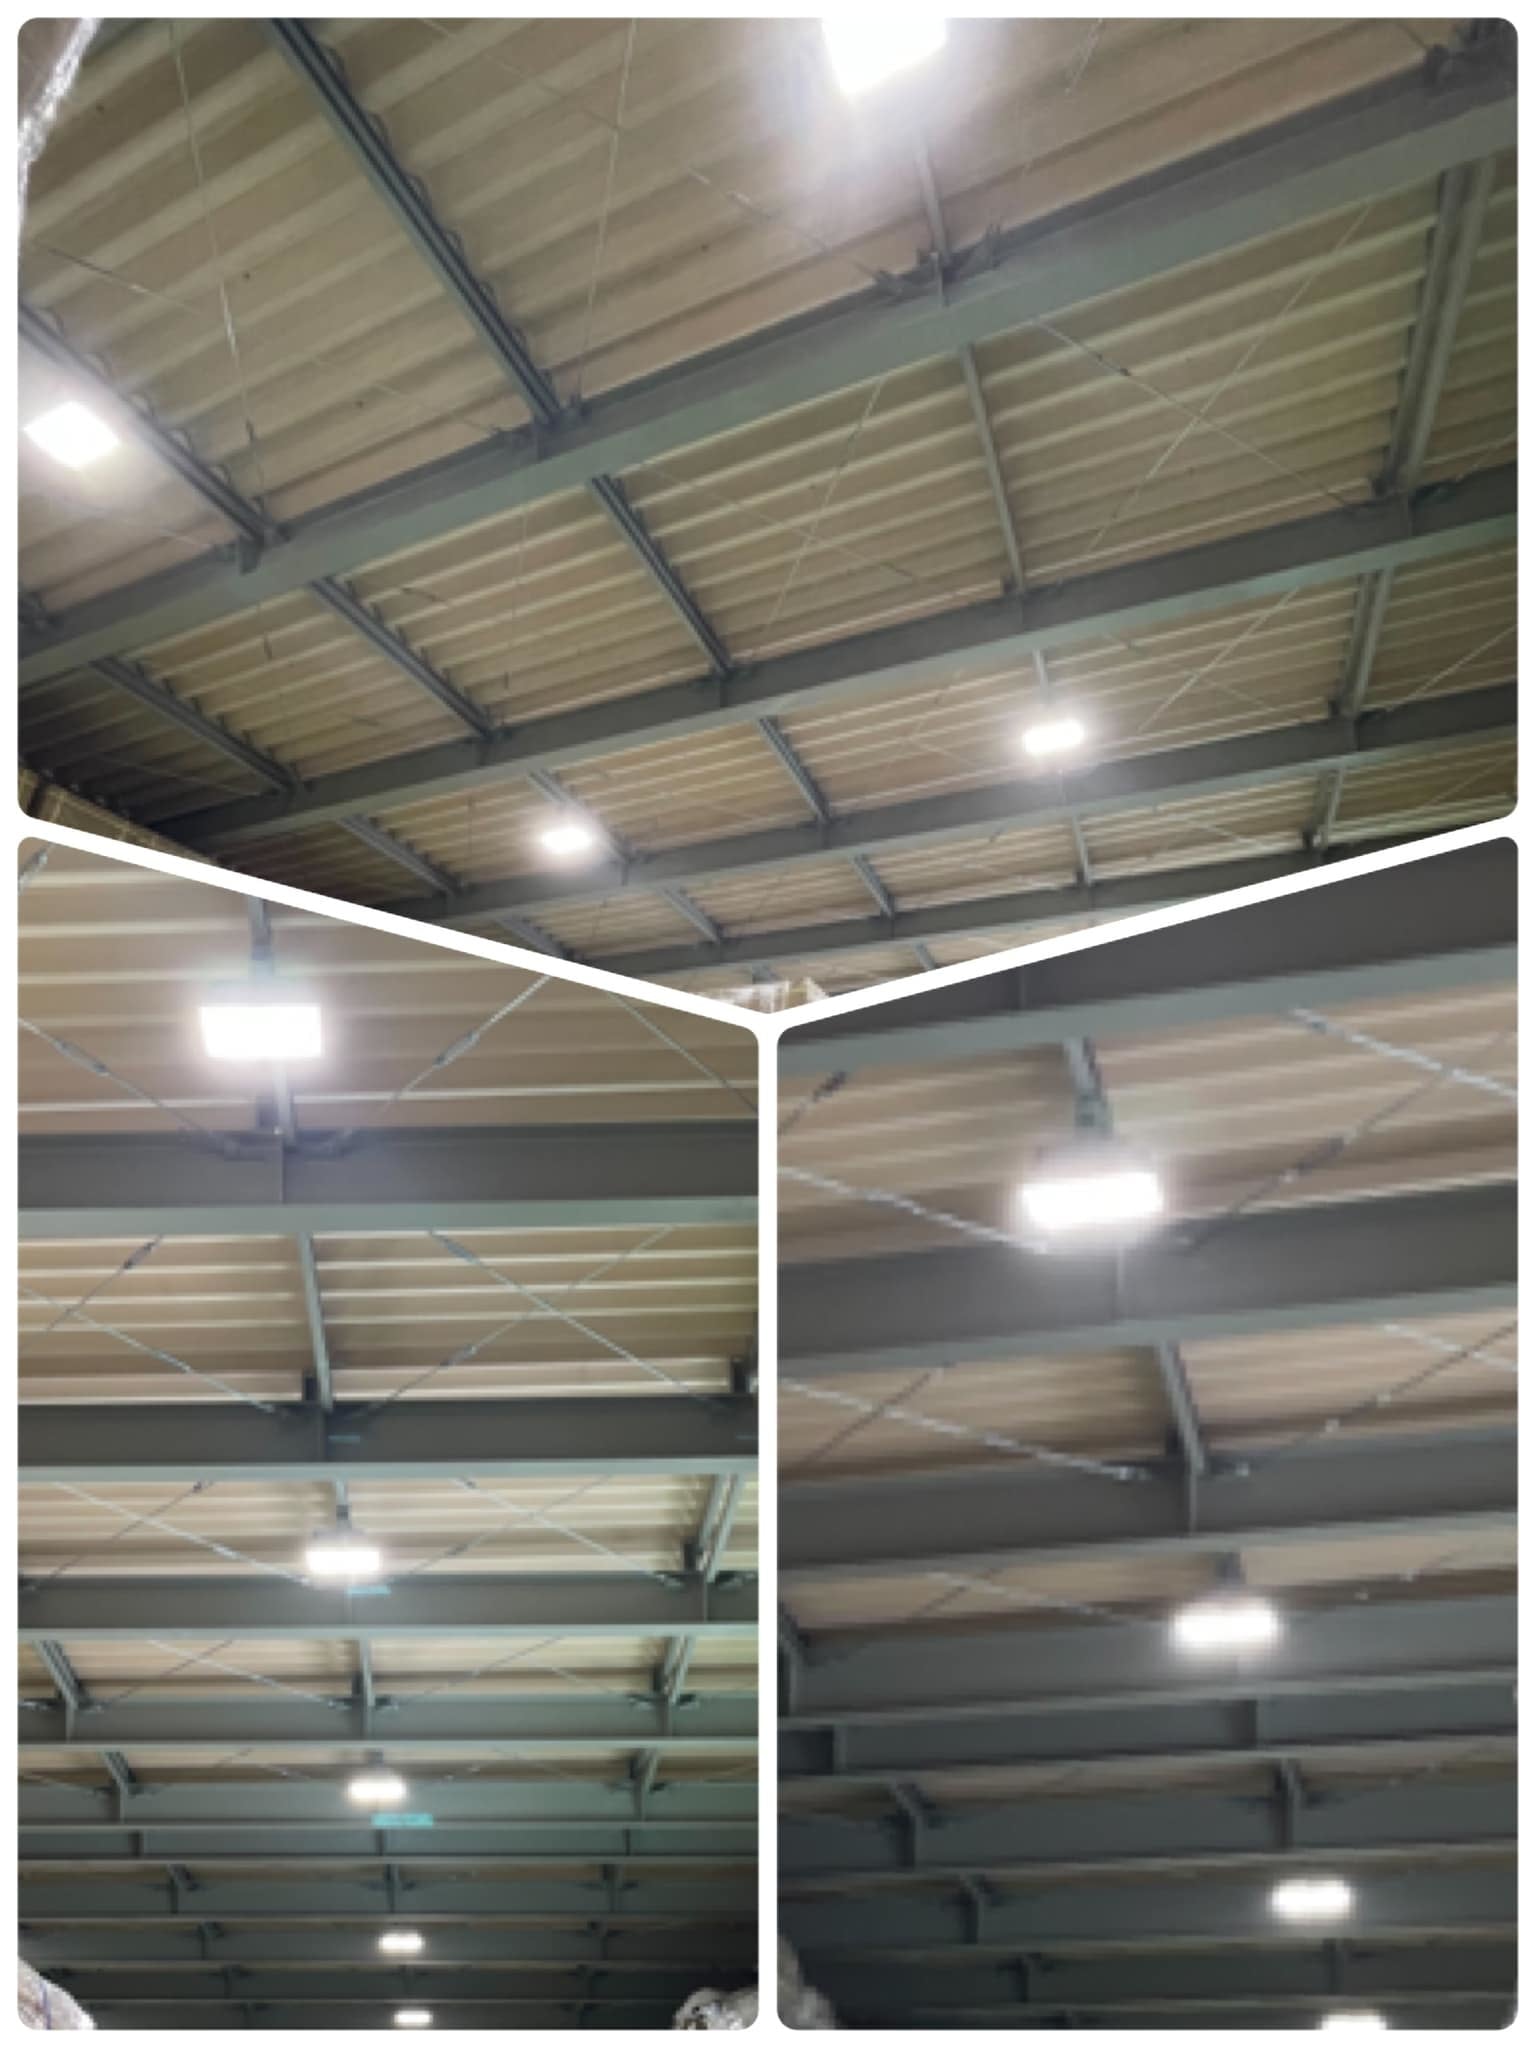 2021年3月 川口市 新築倉庫の高天井LED照明器具取付工事